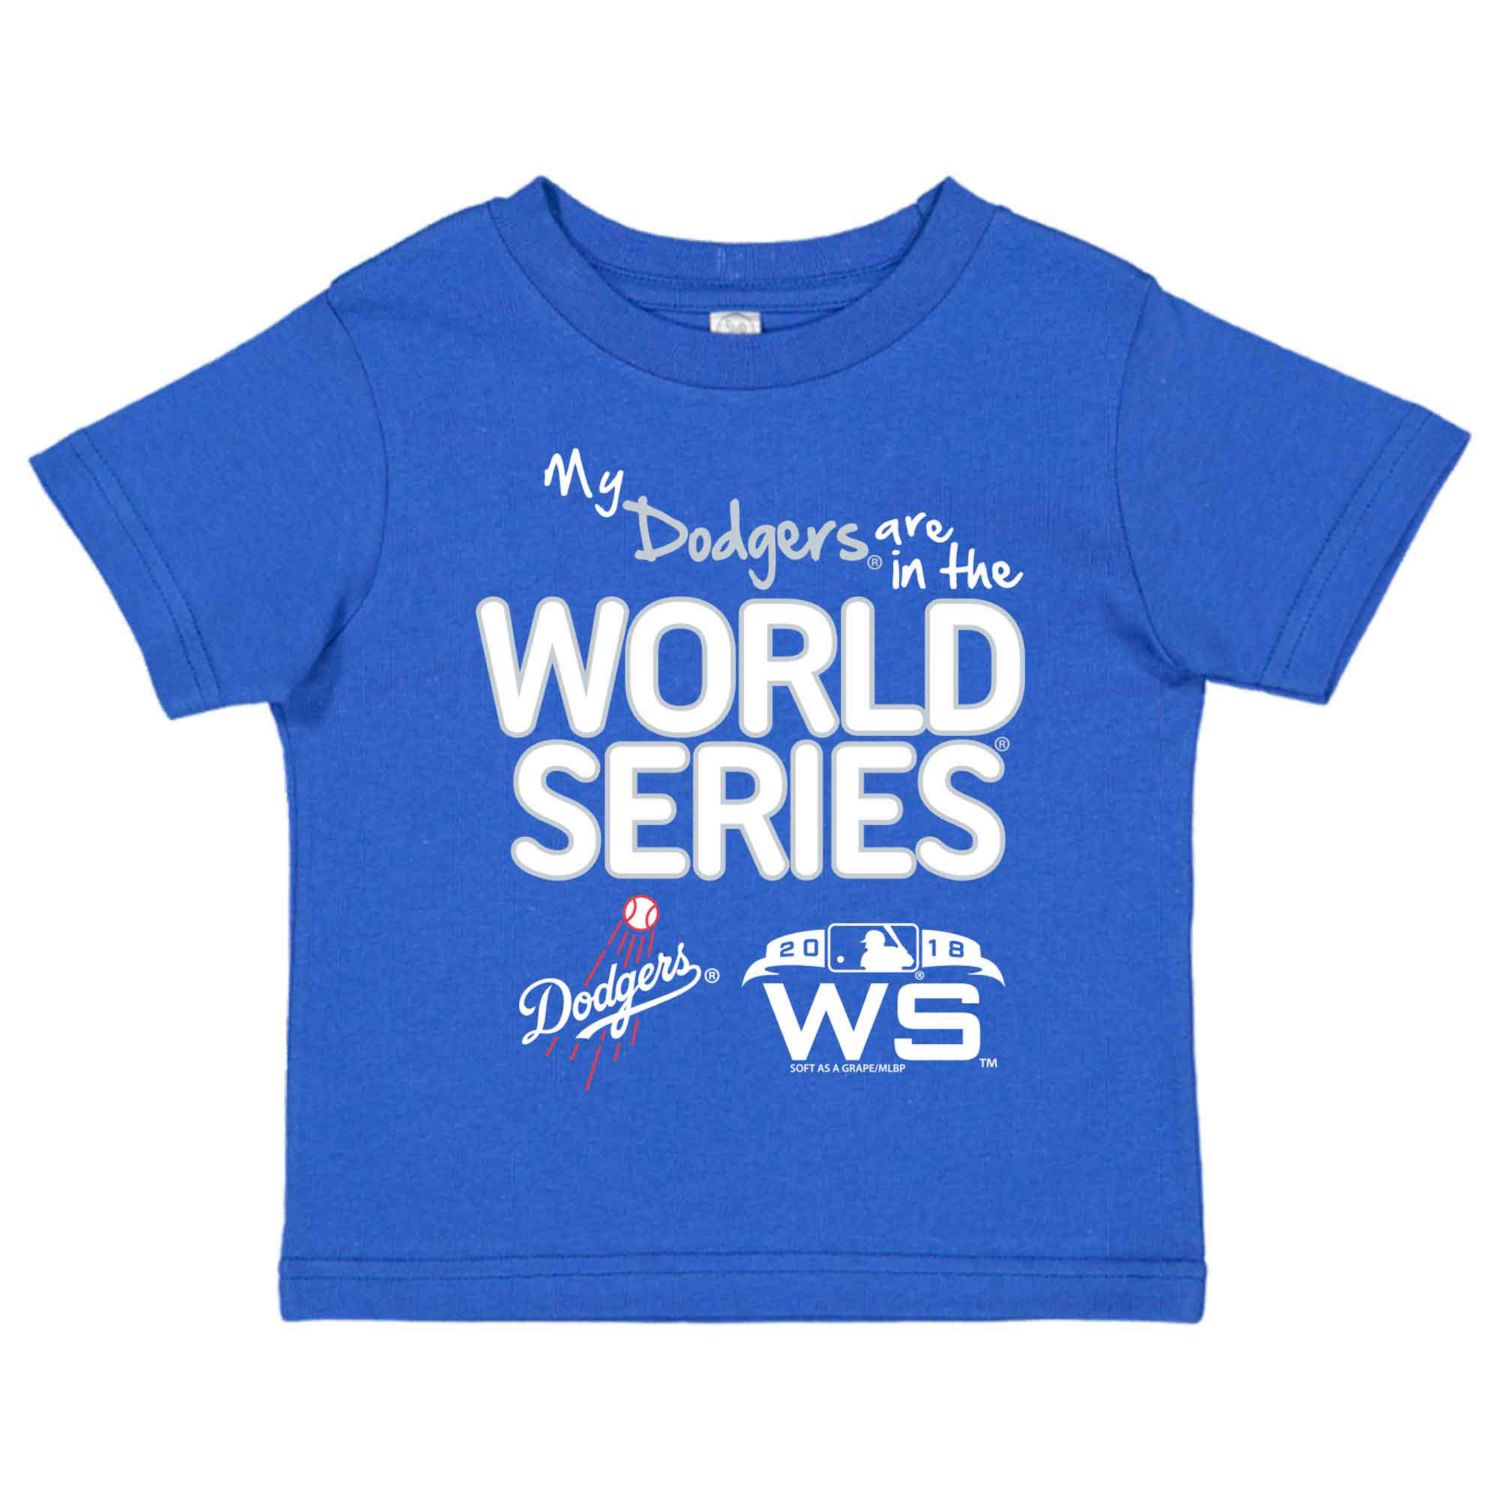 dodgers world series 2018 shirt